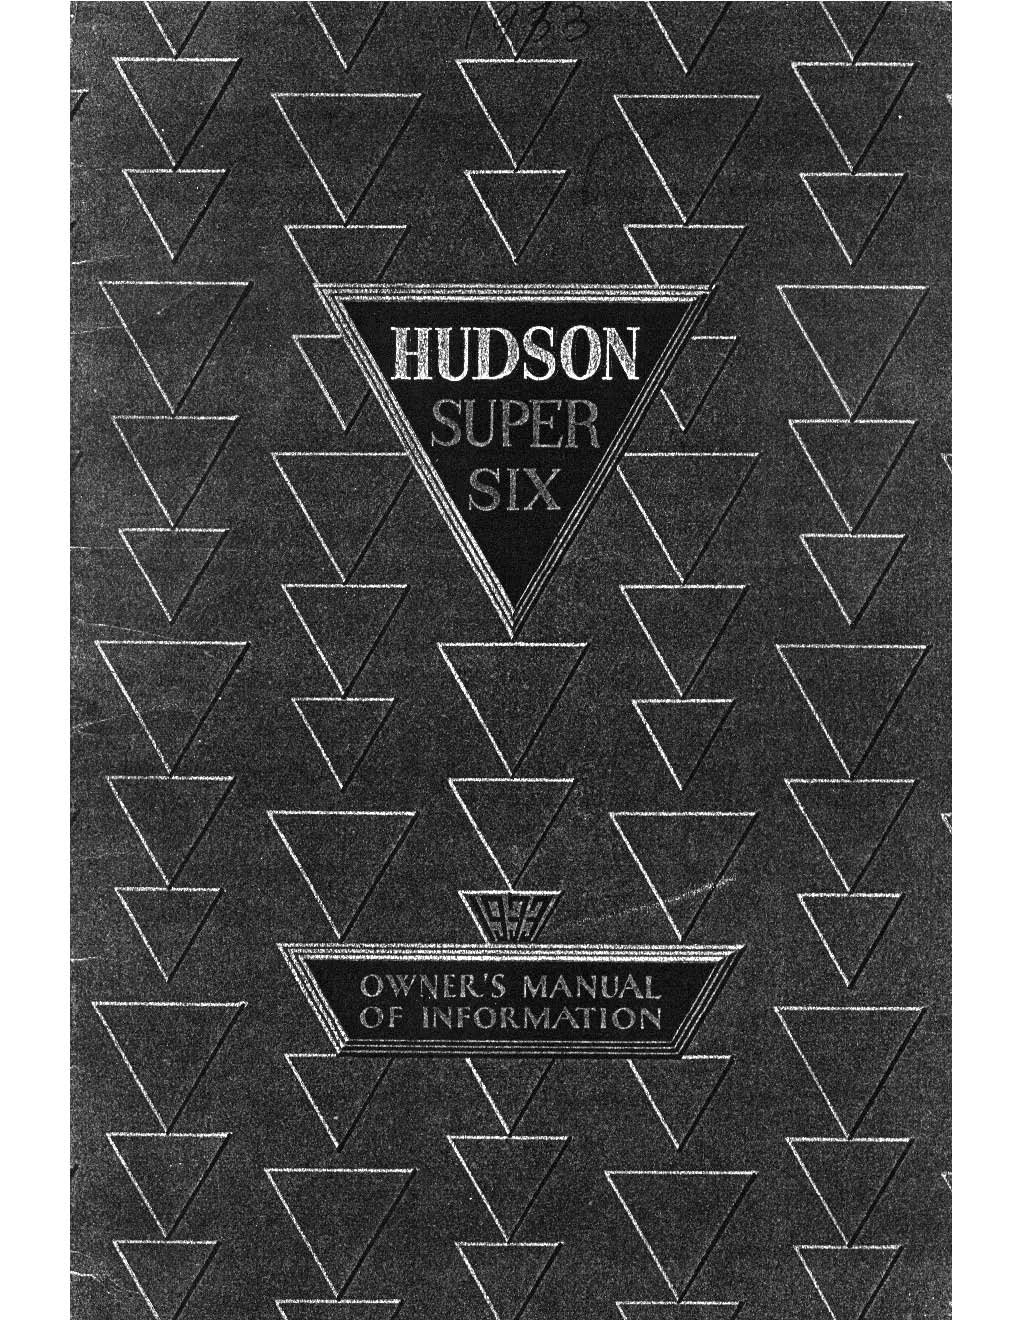 1933 Hudson Super-Six Owners Manual